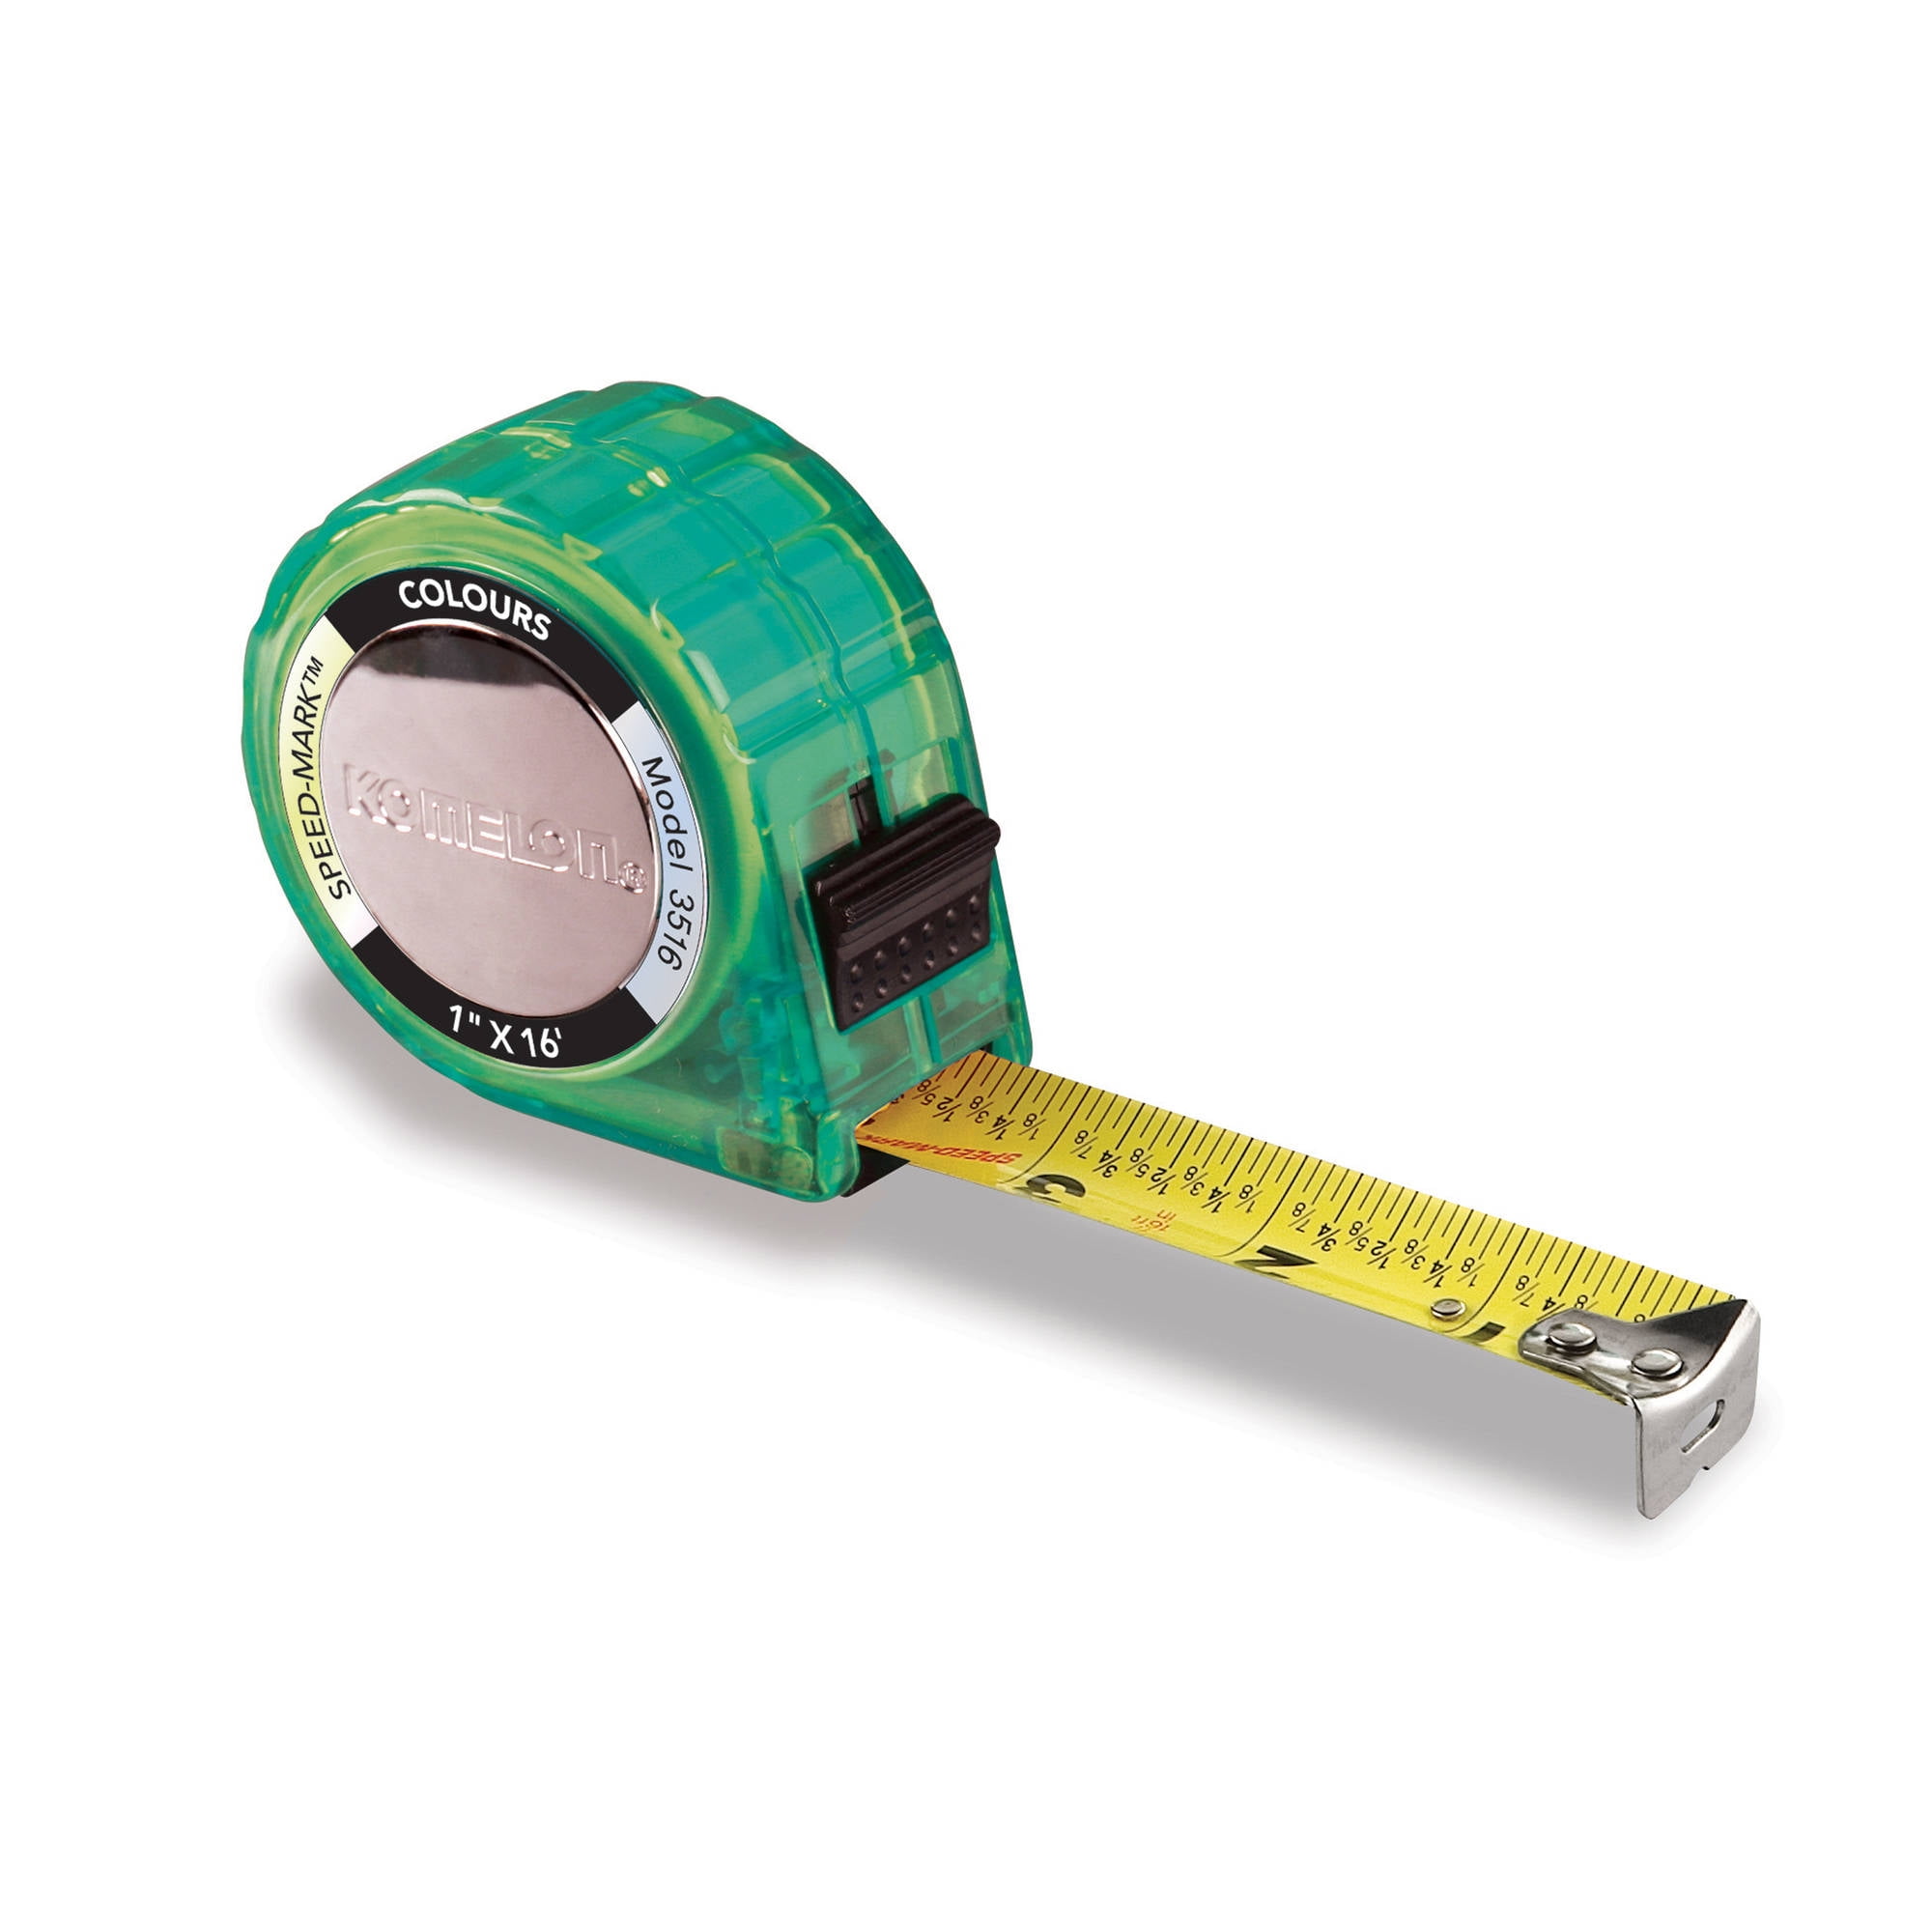 Komelon 6611 Open Reel Fiberglass Tape Measure, 100-Feet